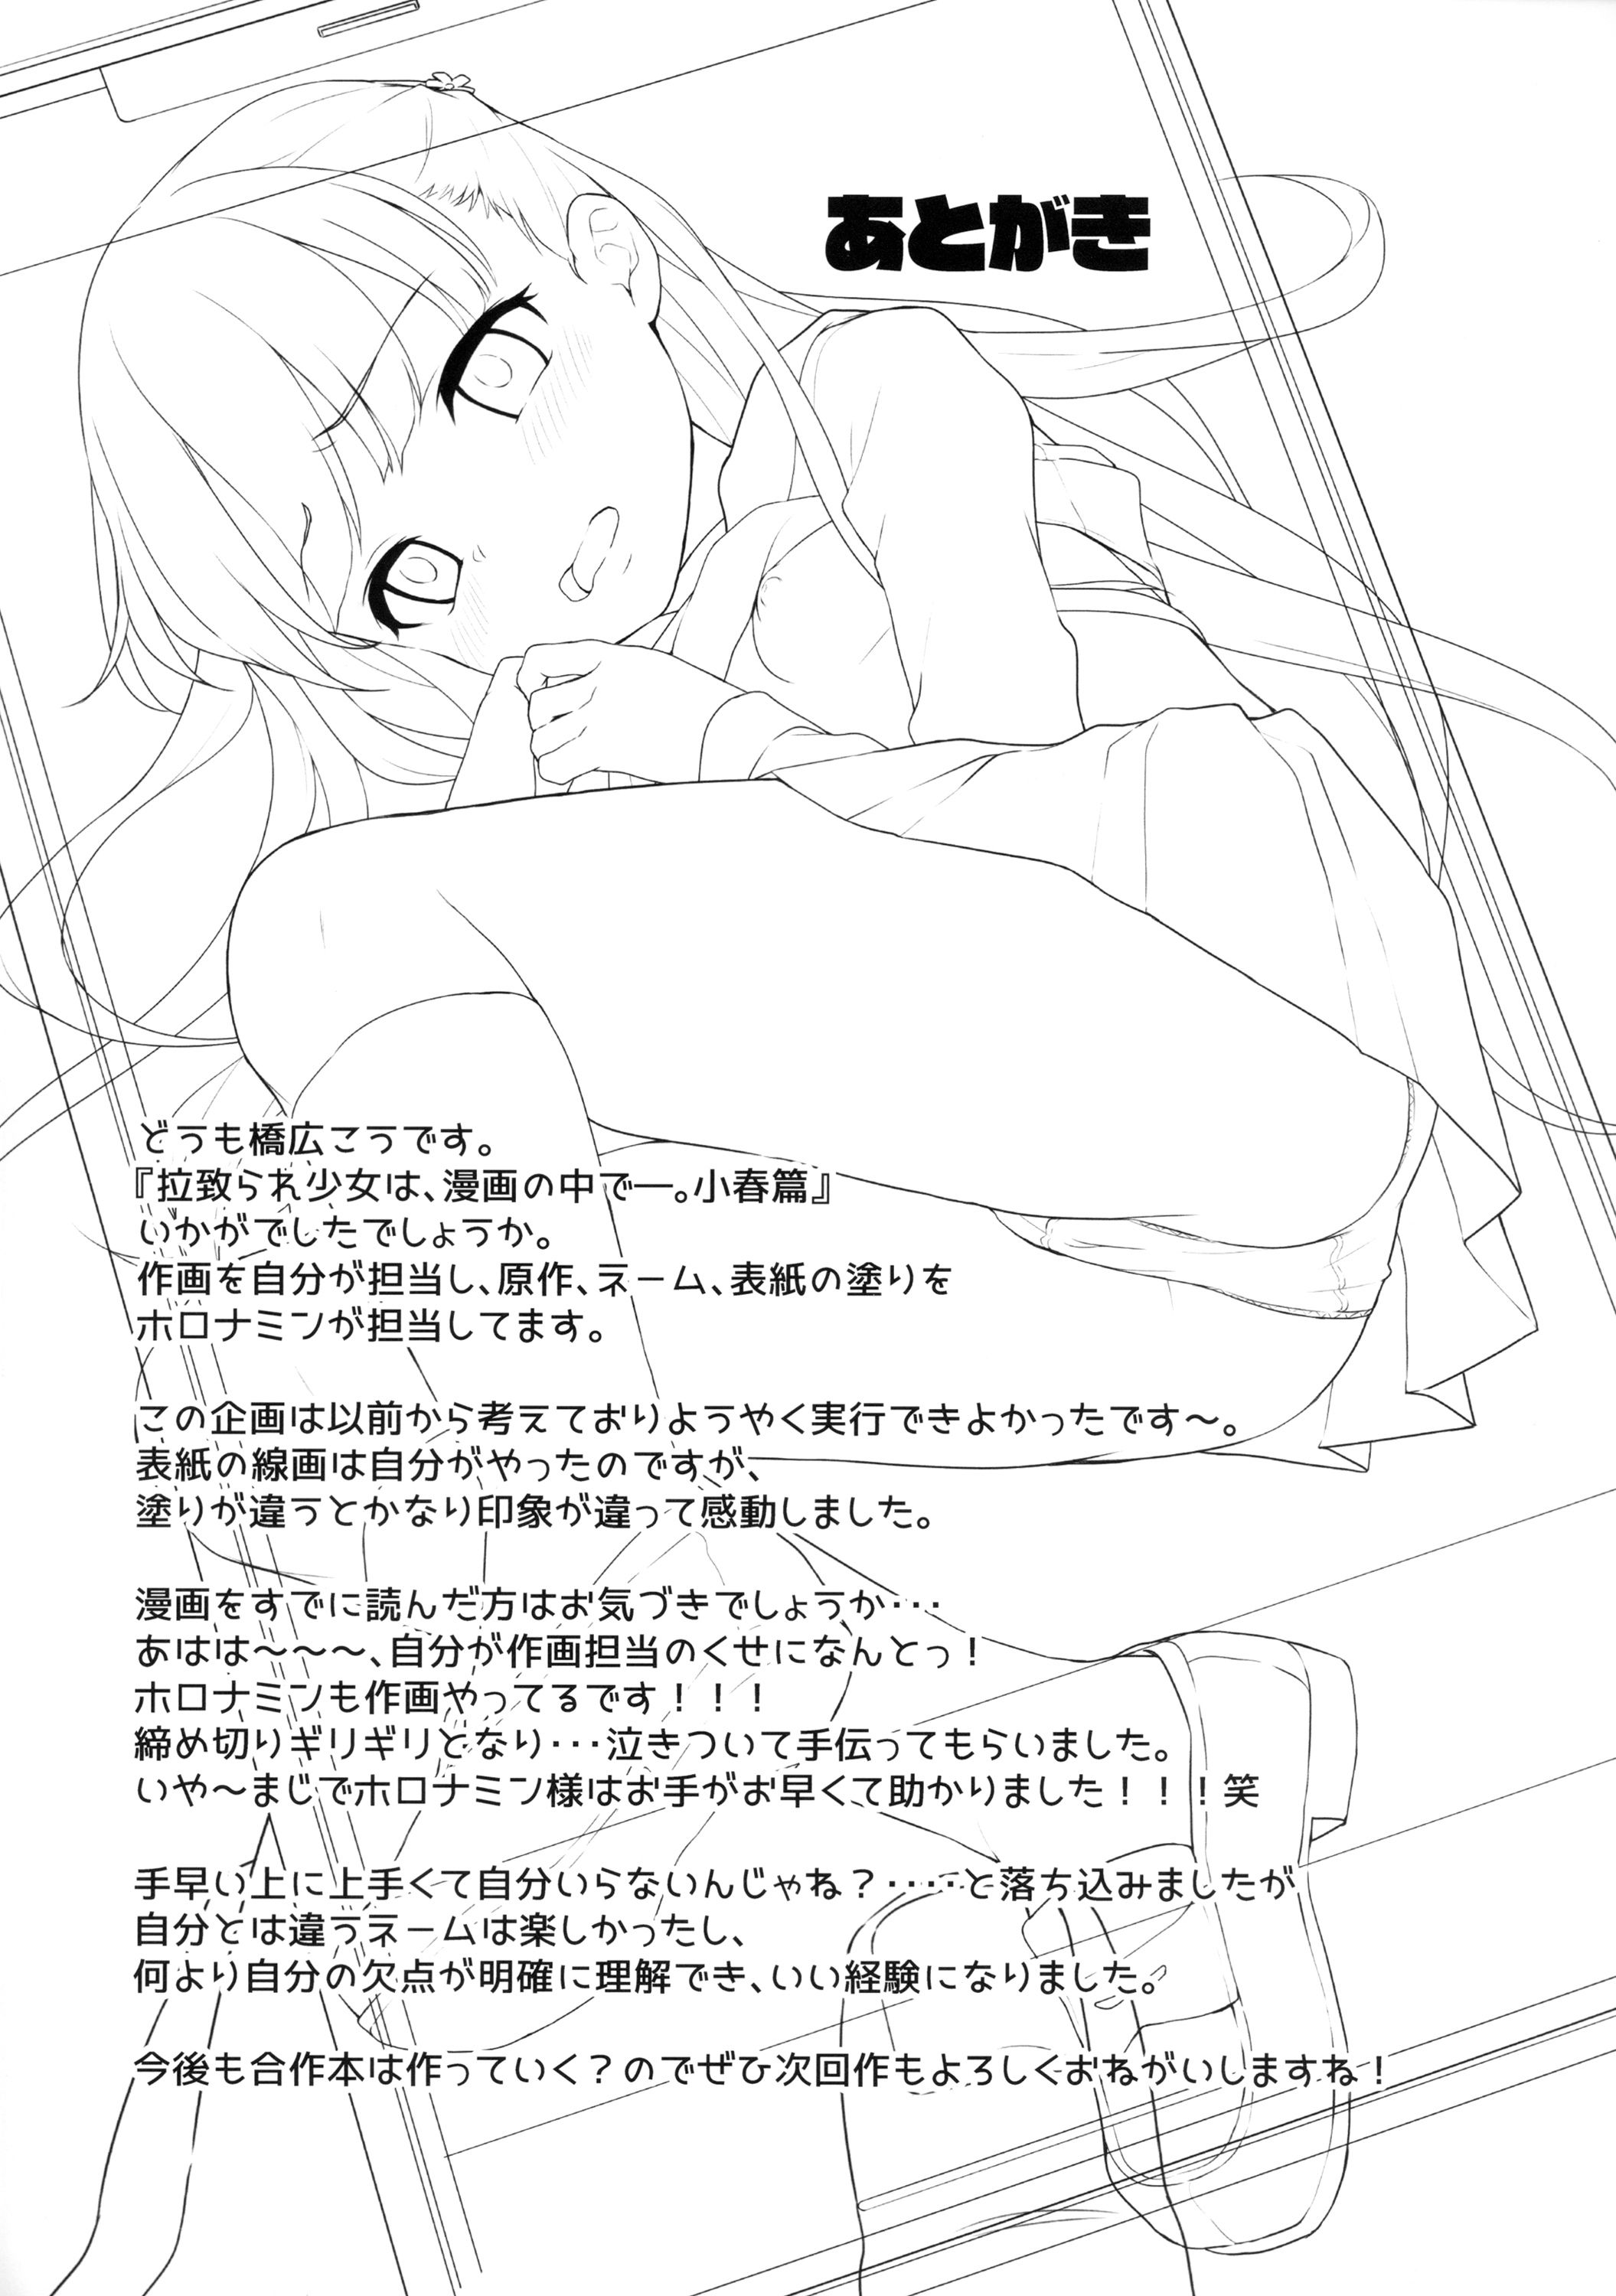 La Niña Secuestrada en el Manga... Capítulo Chiharu - 22